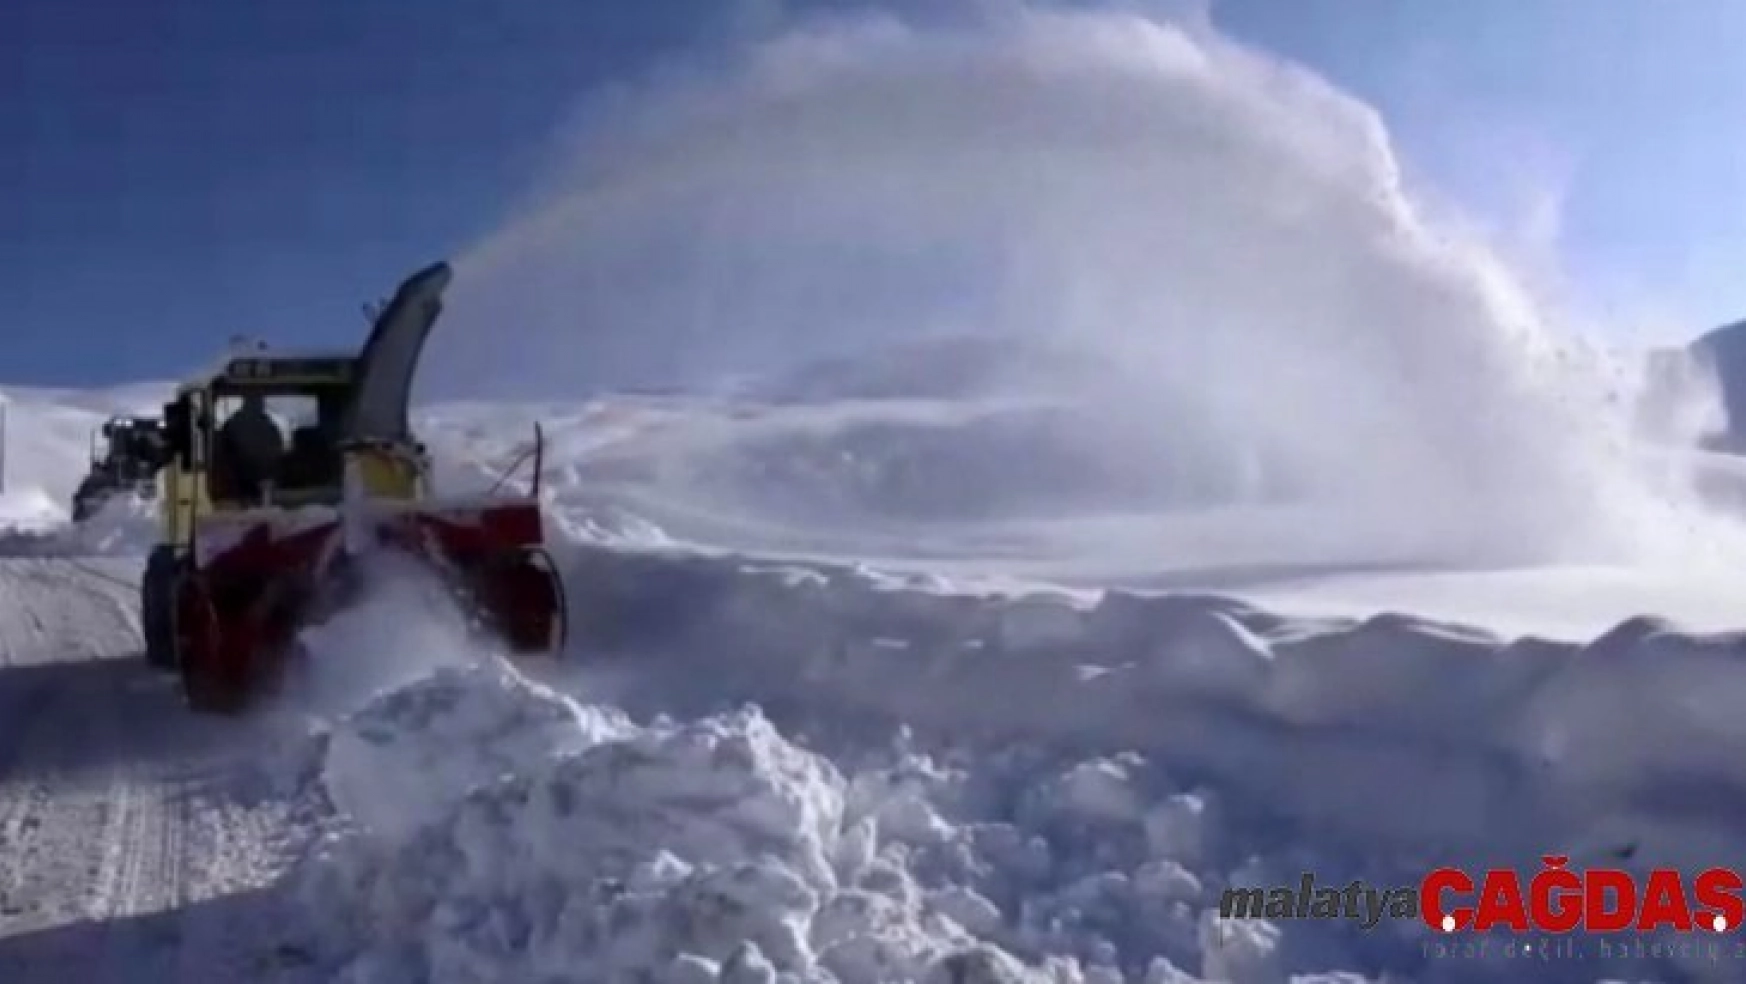 2 bin 800 rakımda yapılan karla mücadele çalışmaları havadan görüntülendi